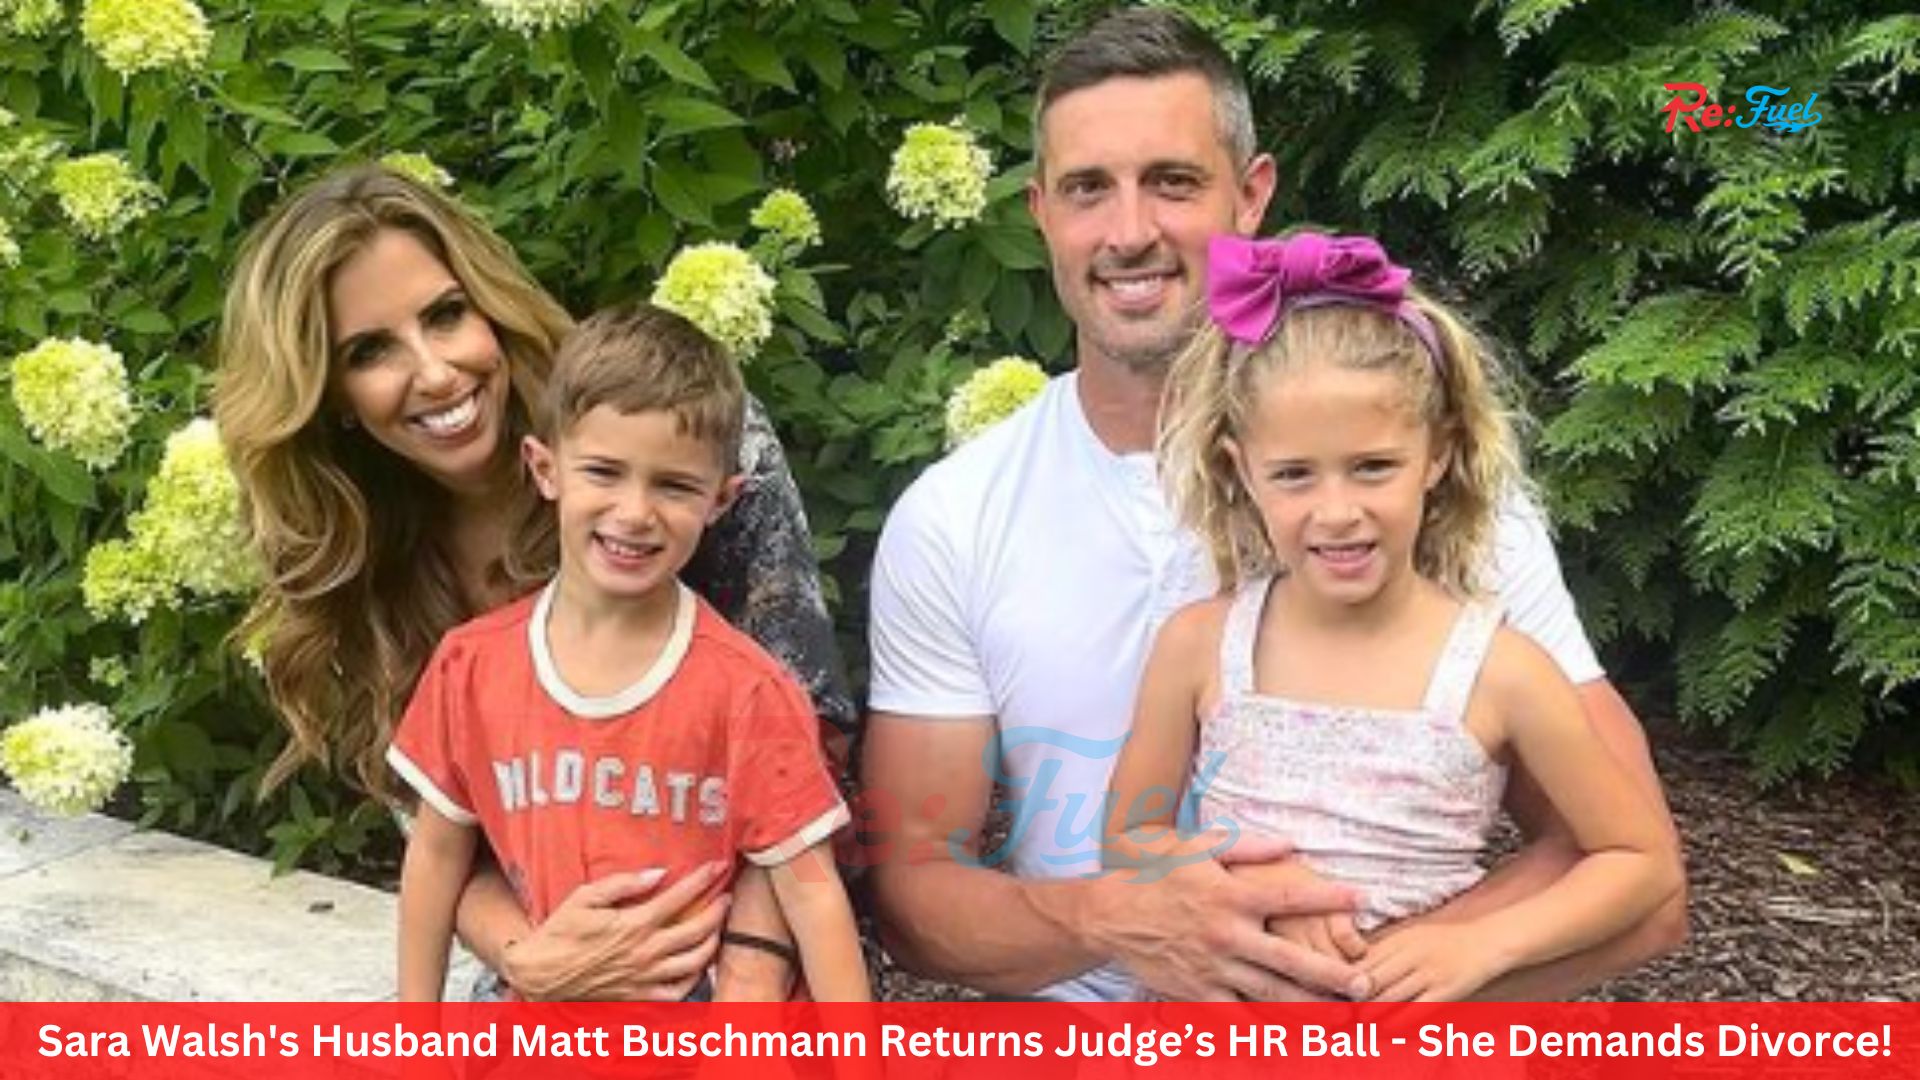 Sara Walsh's Husband Matt Buschmann Returns Judge’s HR Ball - She Demands Divorce!